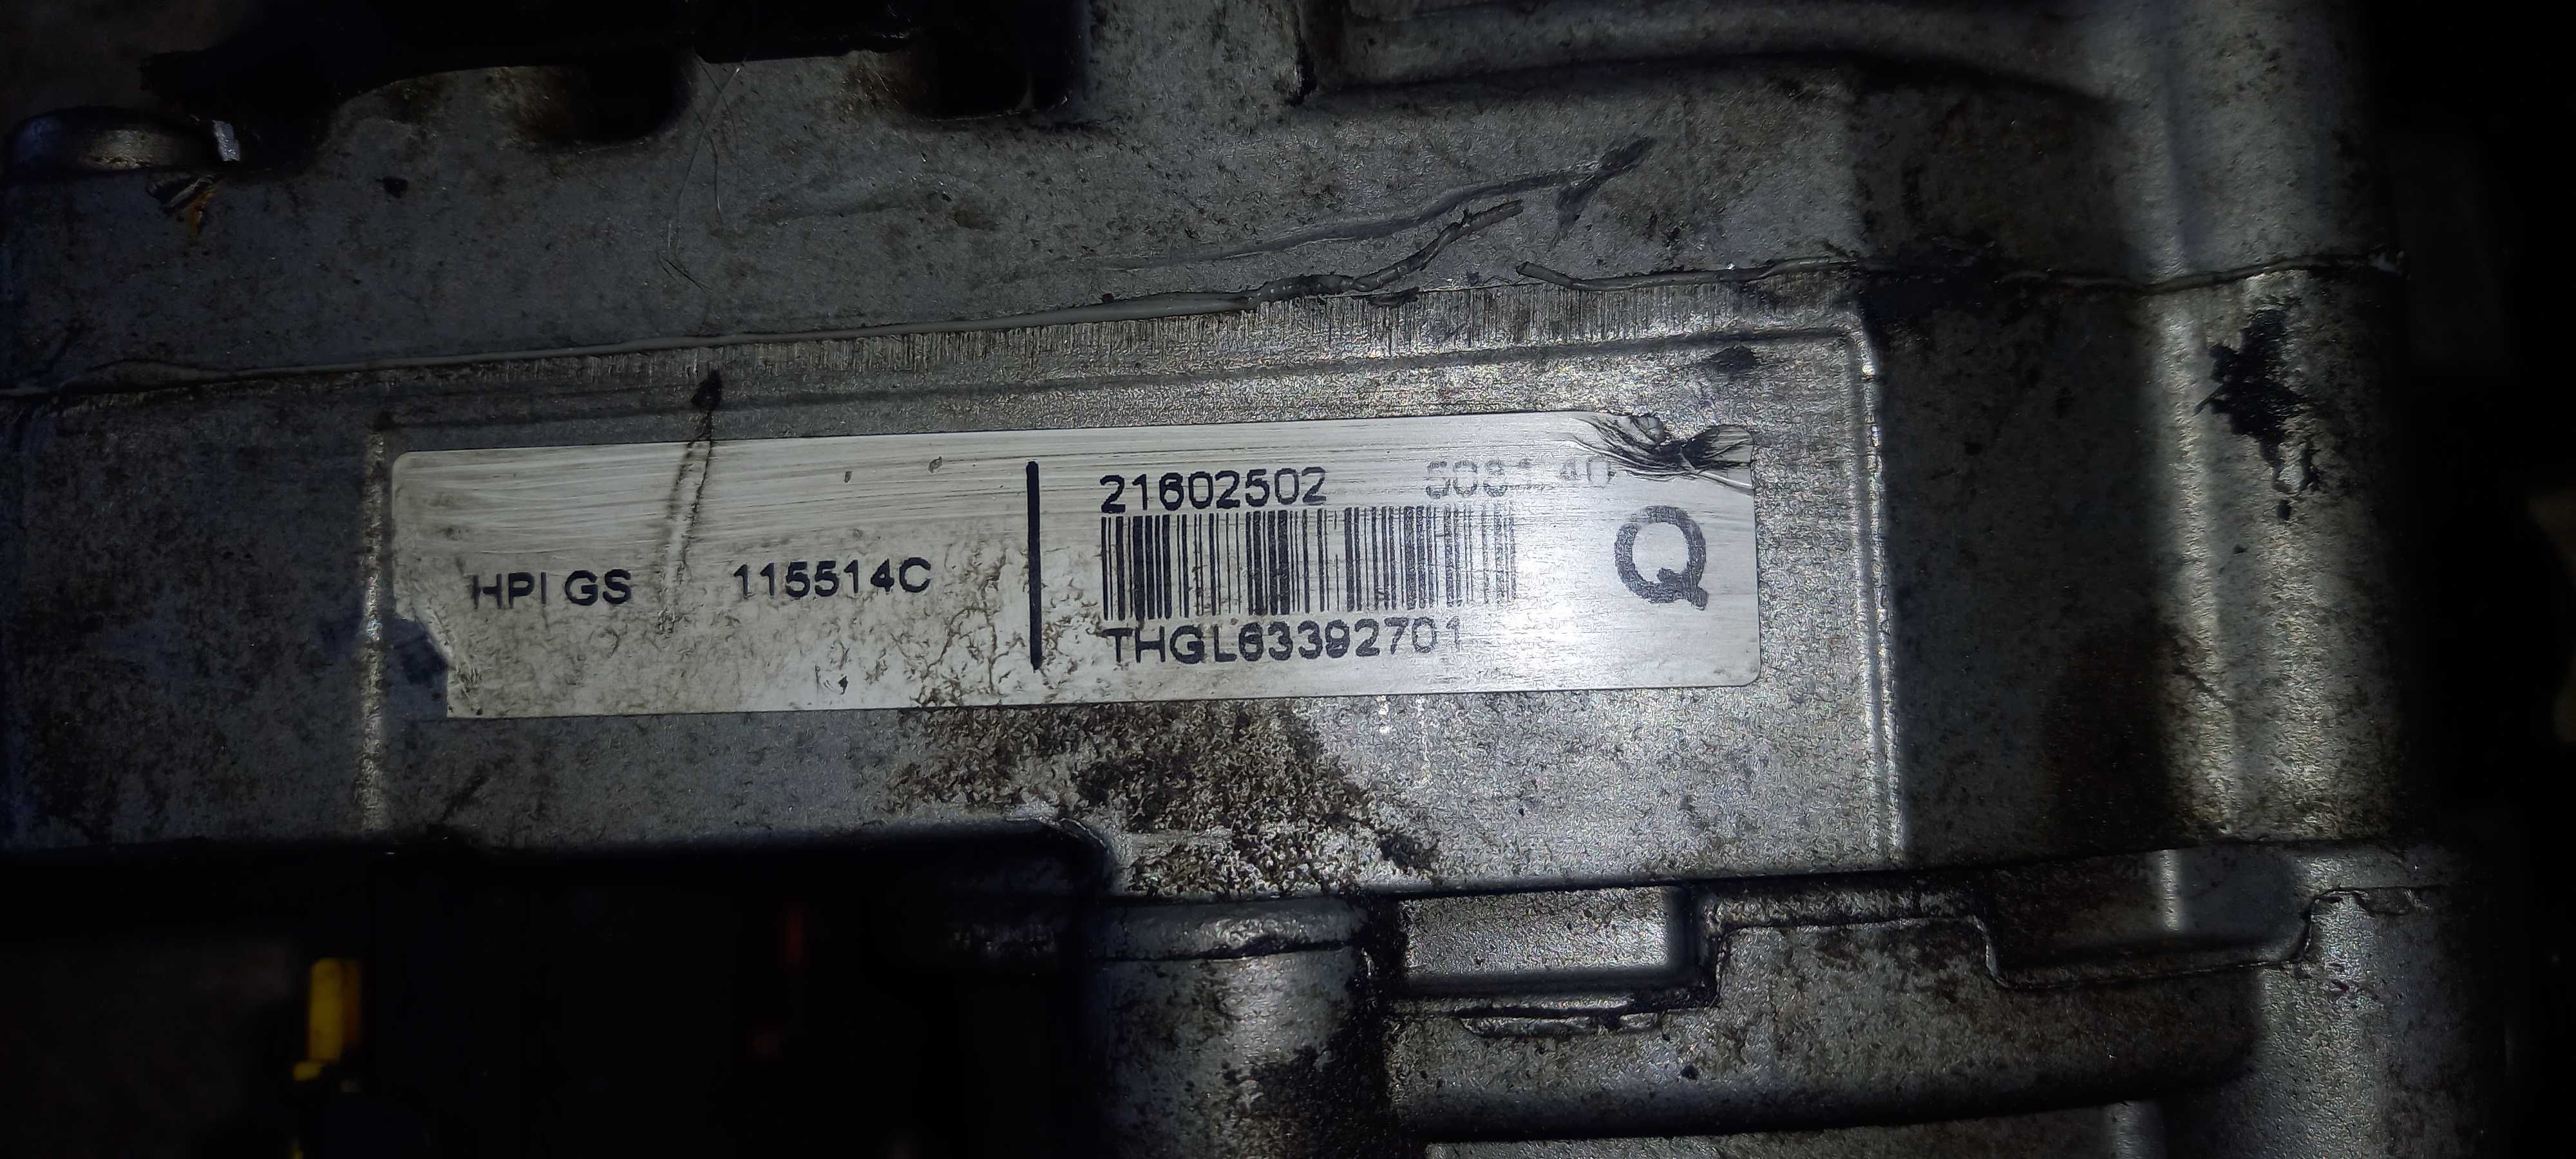 хидравлична електрохидравлична помпа  пежо 307 Peugeot 307 ситроен Ц4